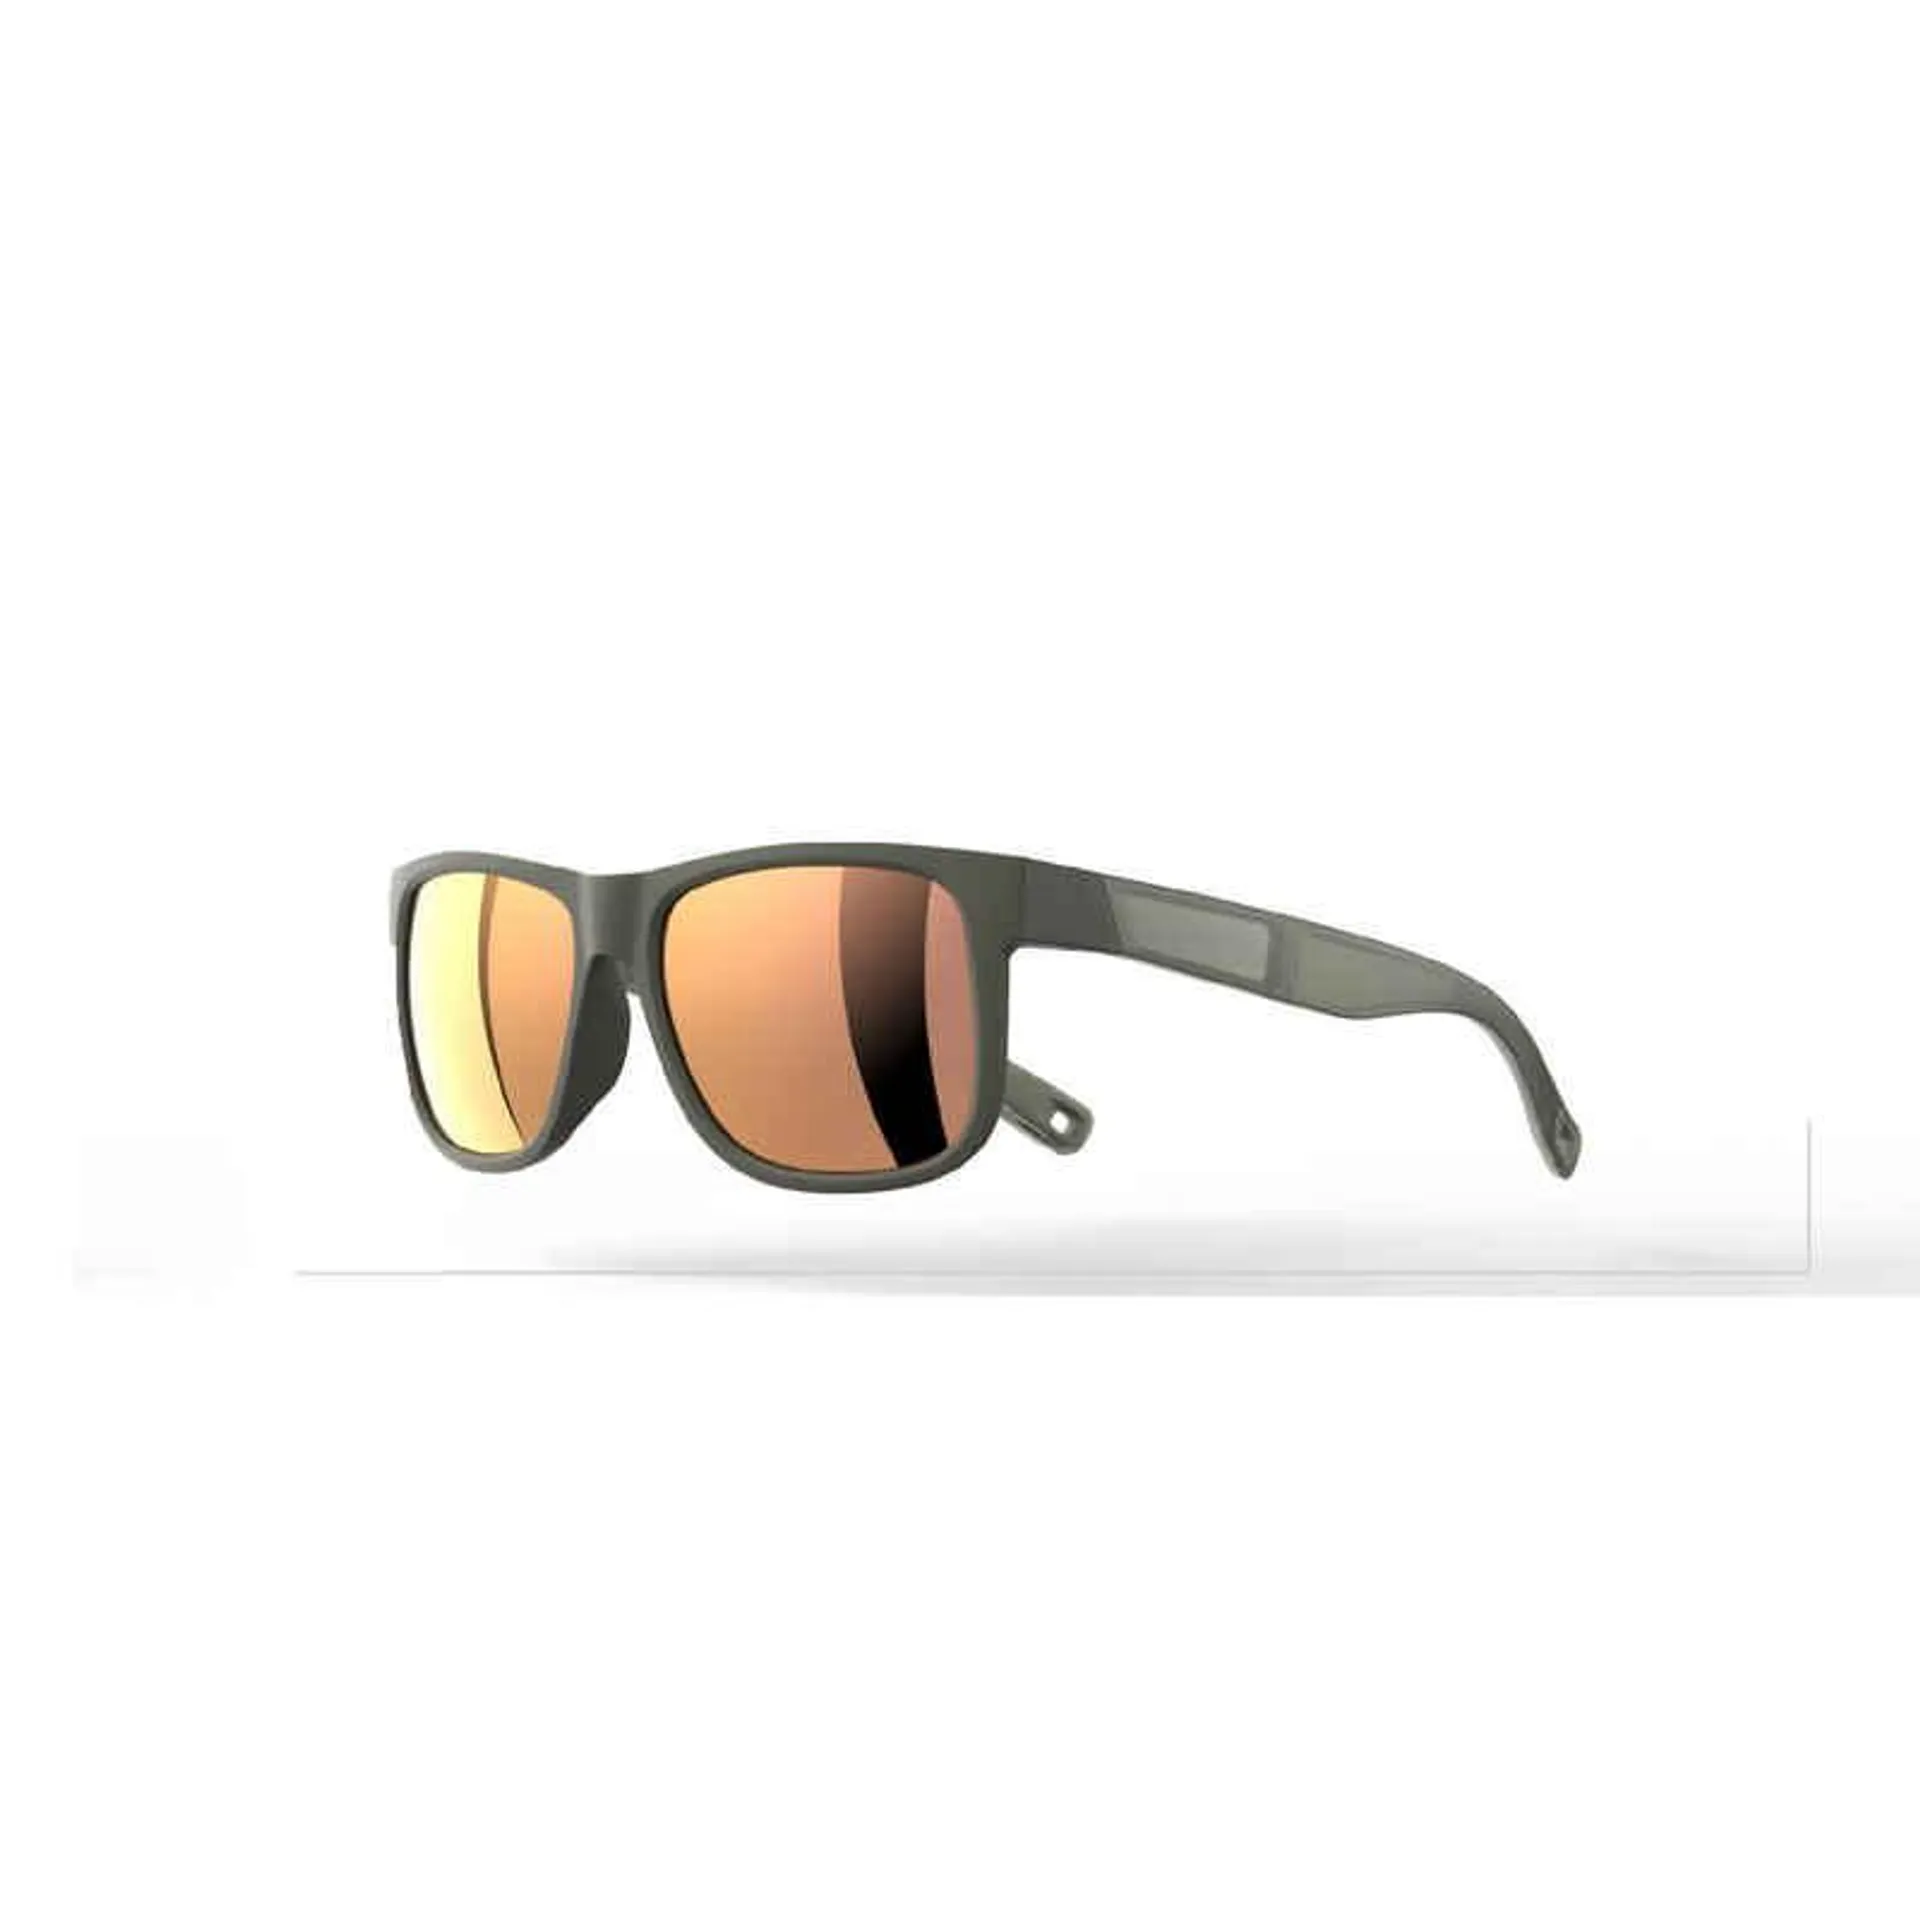 Turistické slnečné okuliare pre dospelých MH140 kategória 3 modré